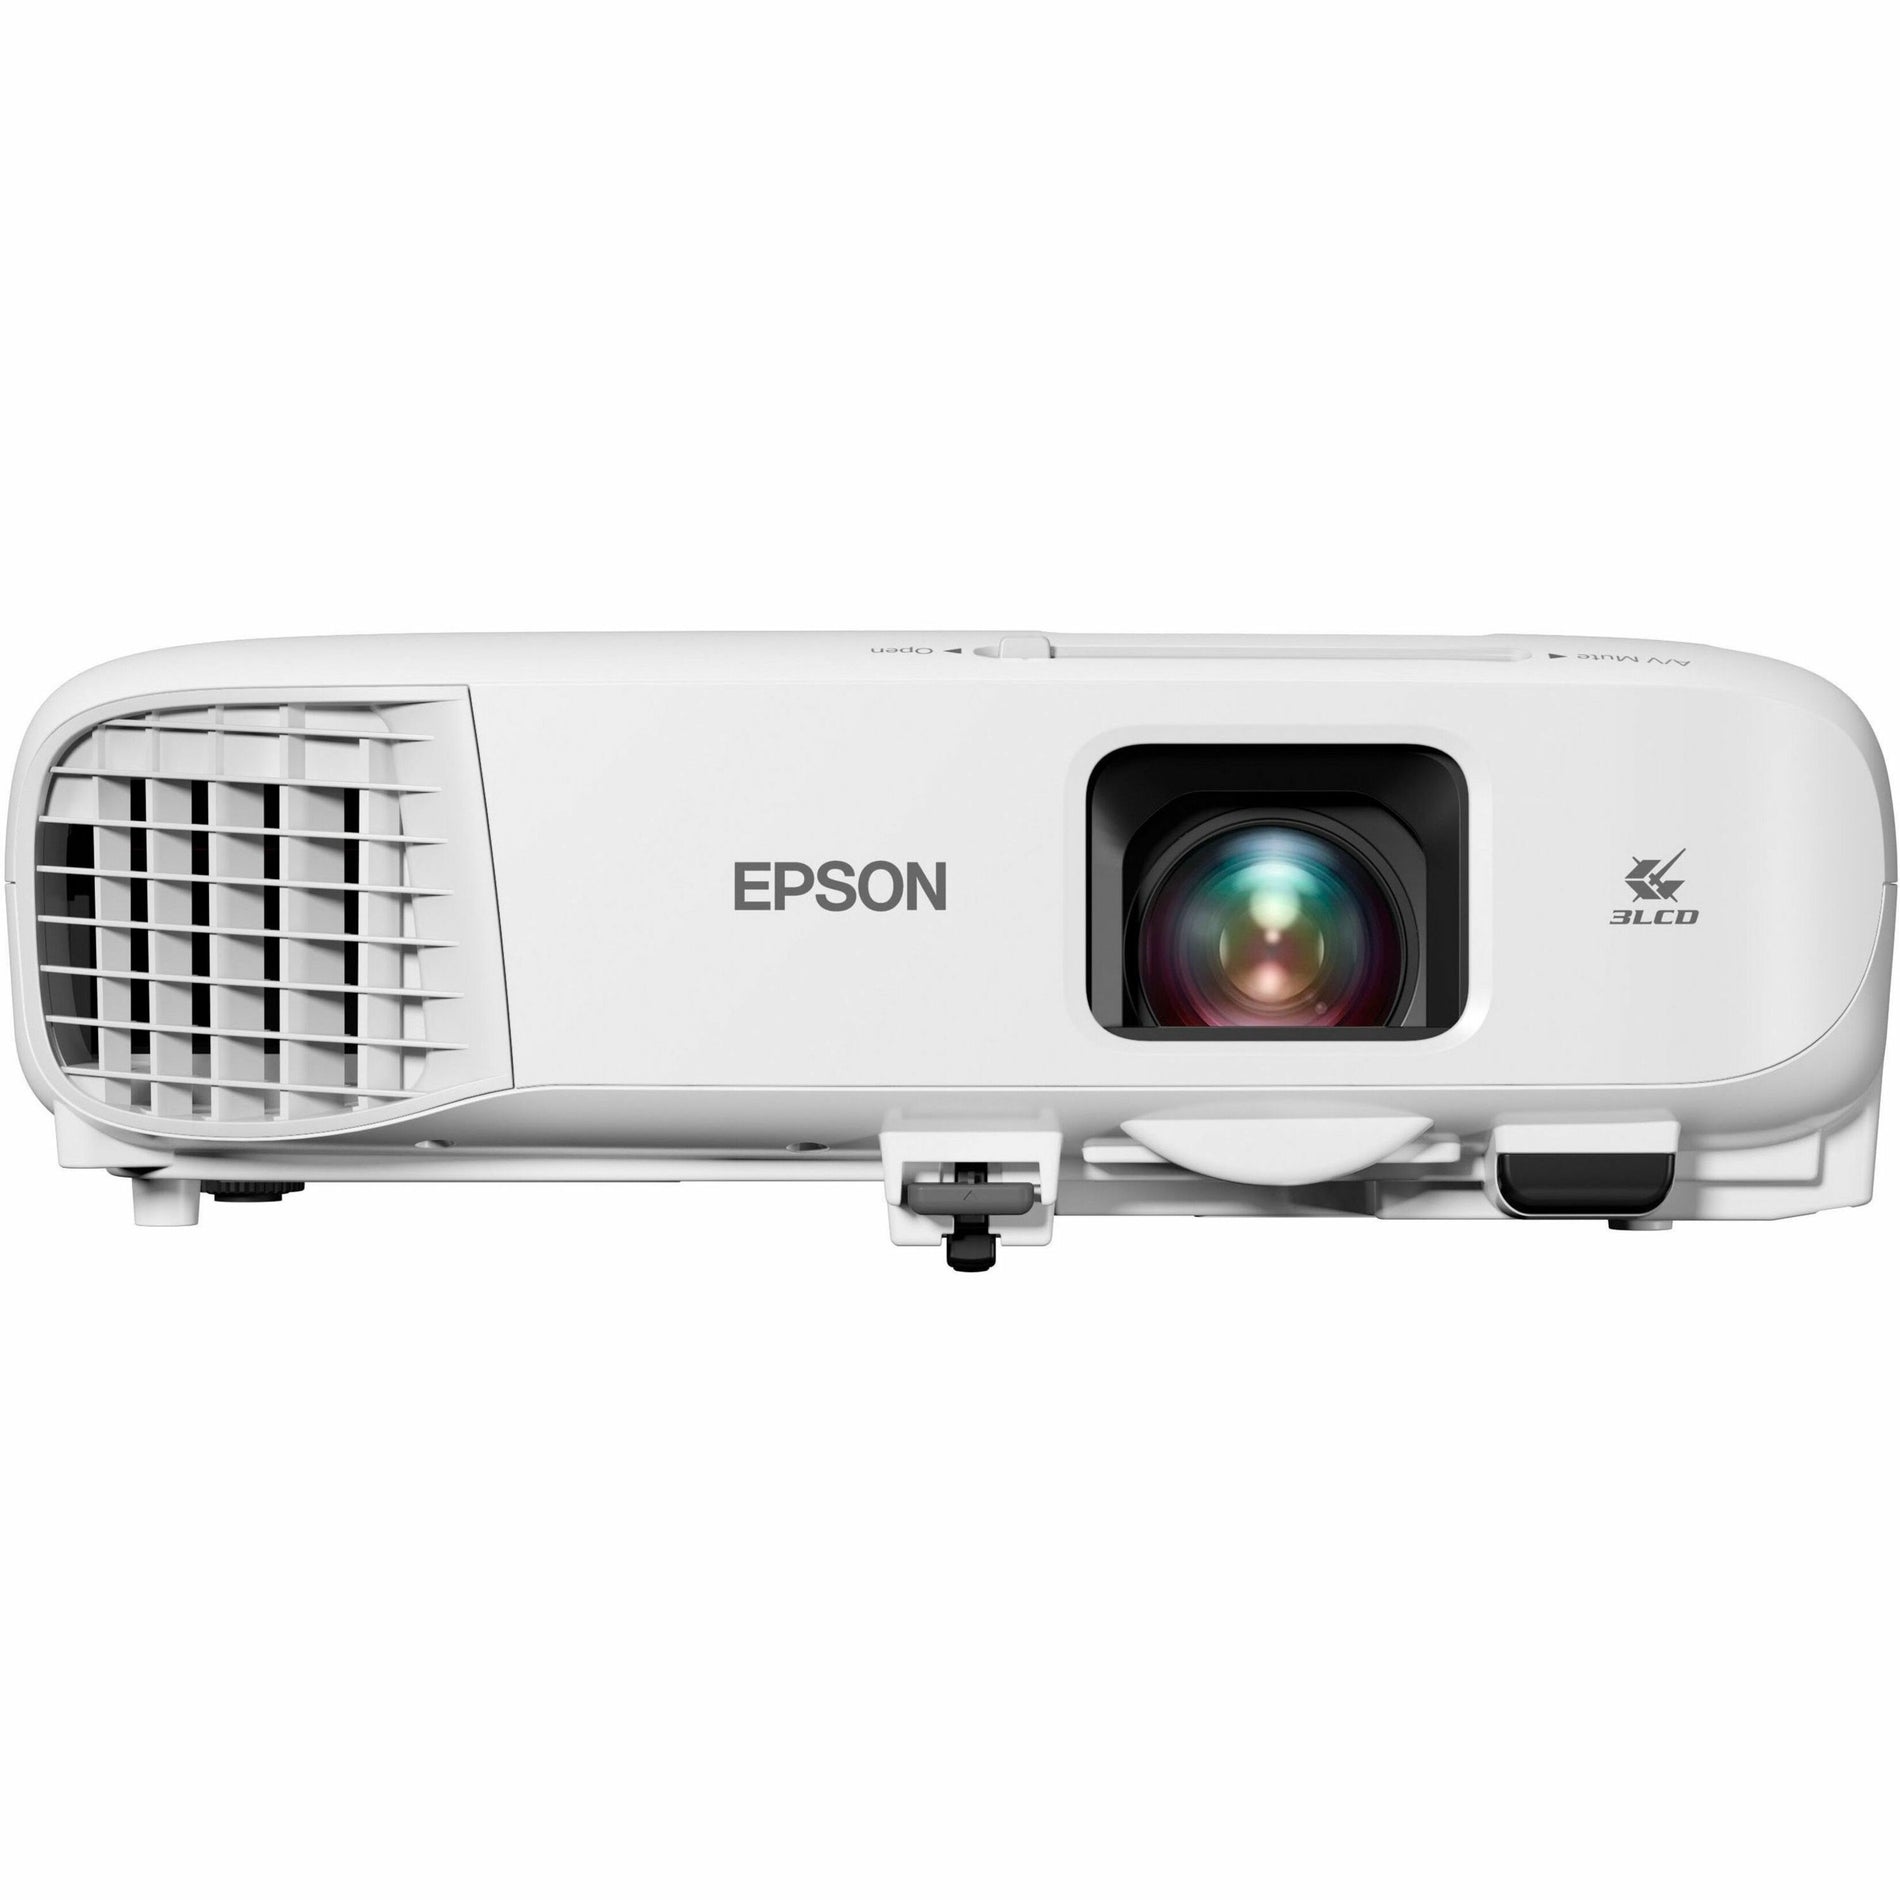 エプソン V11H987020 PowerLite 982W 3LCD WXGA クラスルームプロジェクター デュアル HDMI 4200 lm 16:10 - エプソン: Epson